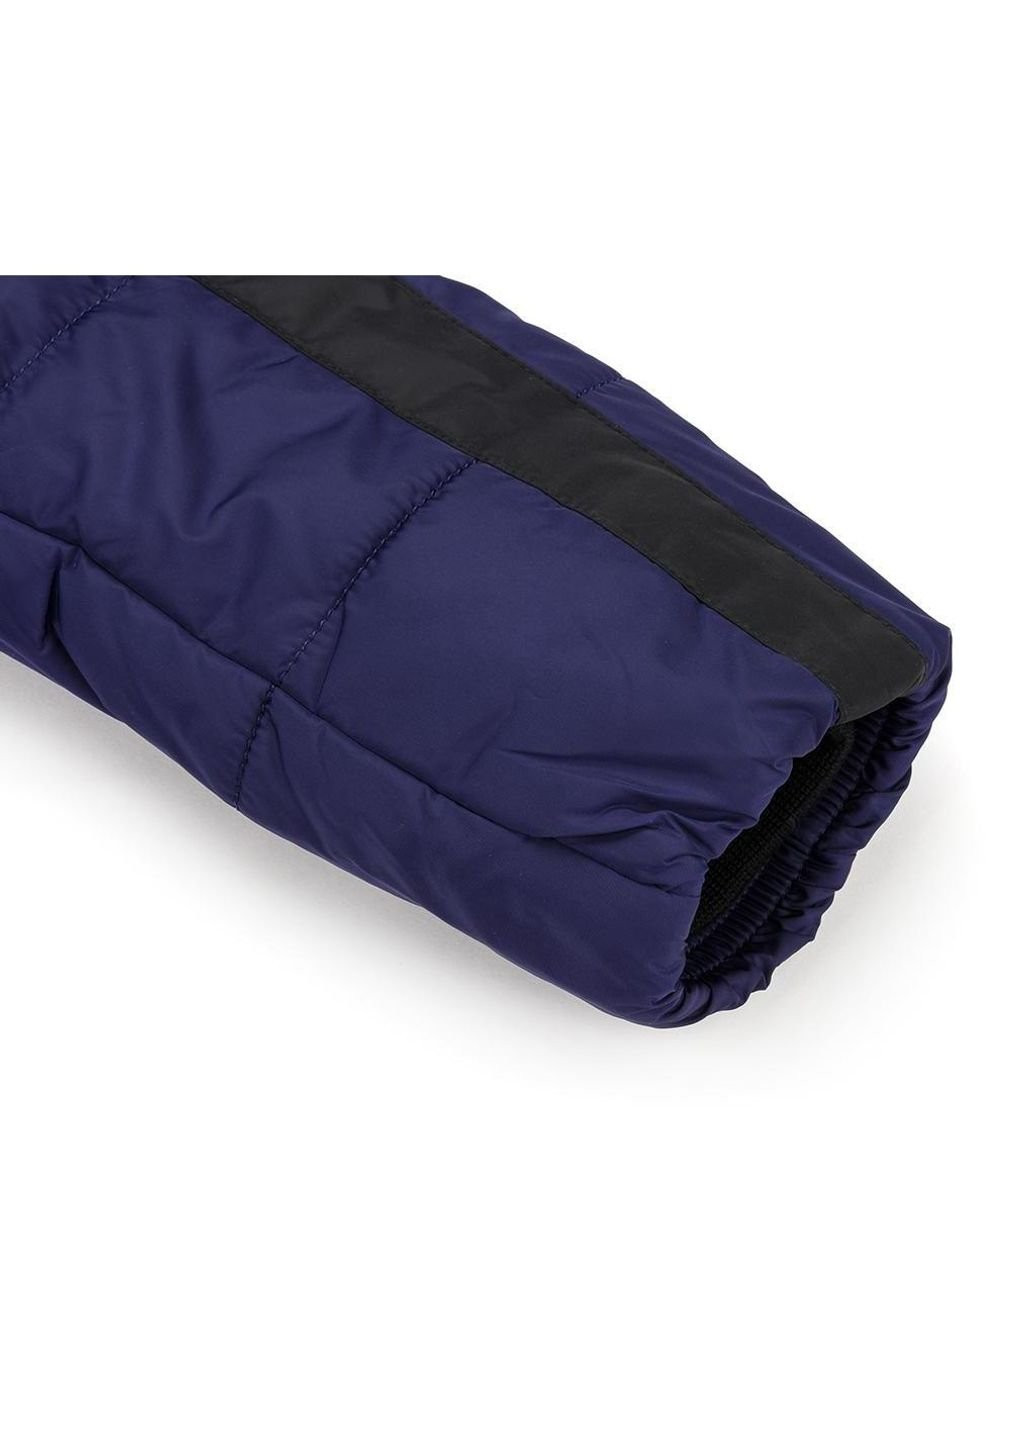 Фиолетовая демисезонная куртка с капюшоном (sicmy-g306-116b-blue) Snowimage